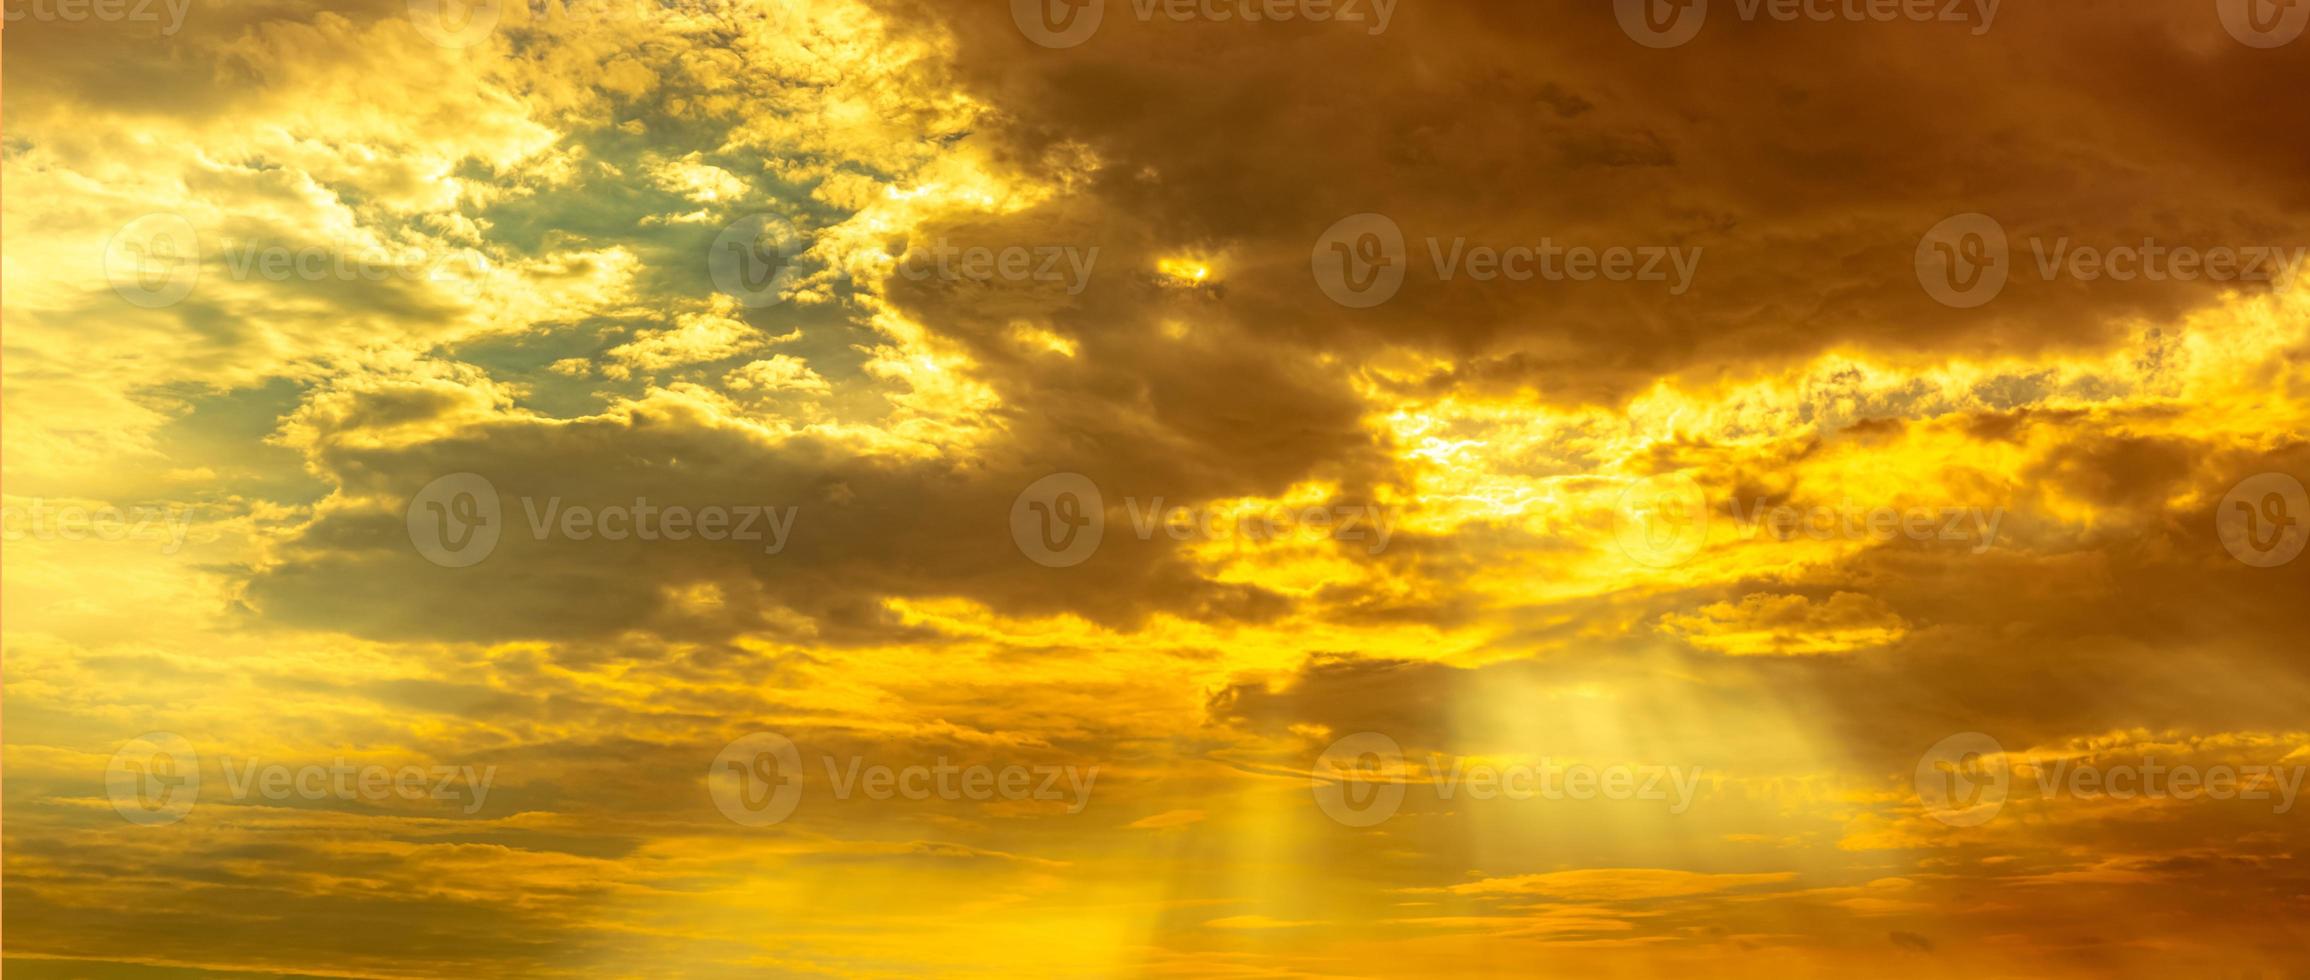 Dieu lumière. ciel nuageux doré dramatique avec rayon de soleil. rayons de soleil jaunes à travers les nuages dorés. dieu lumière du ciel pour l'espoir et le concept fidèle. croire en Dieu. beau fond de ciel de lumière du soleil. photo